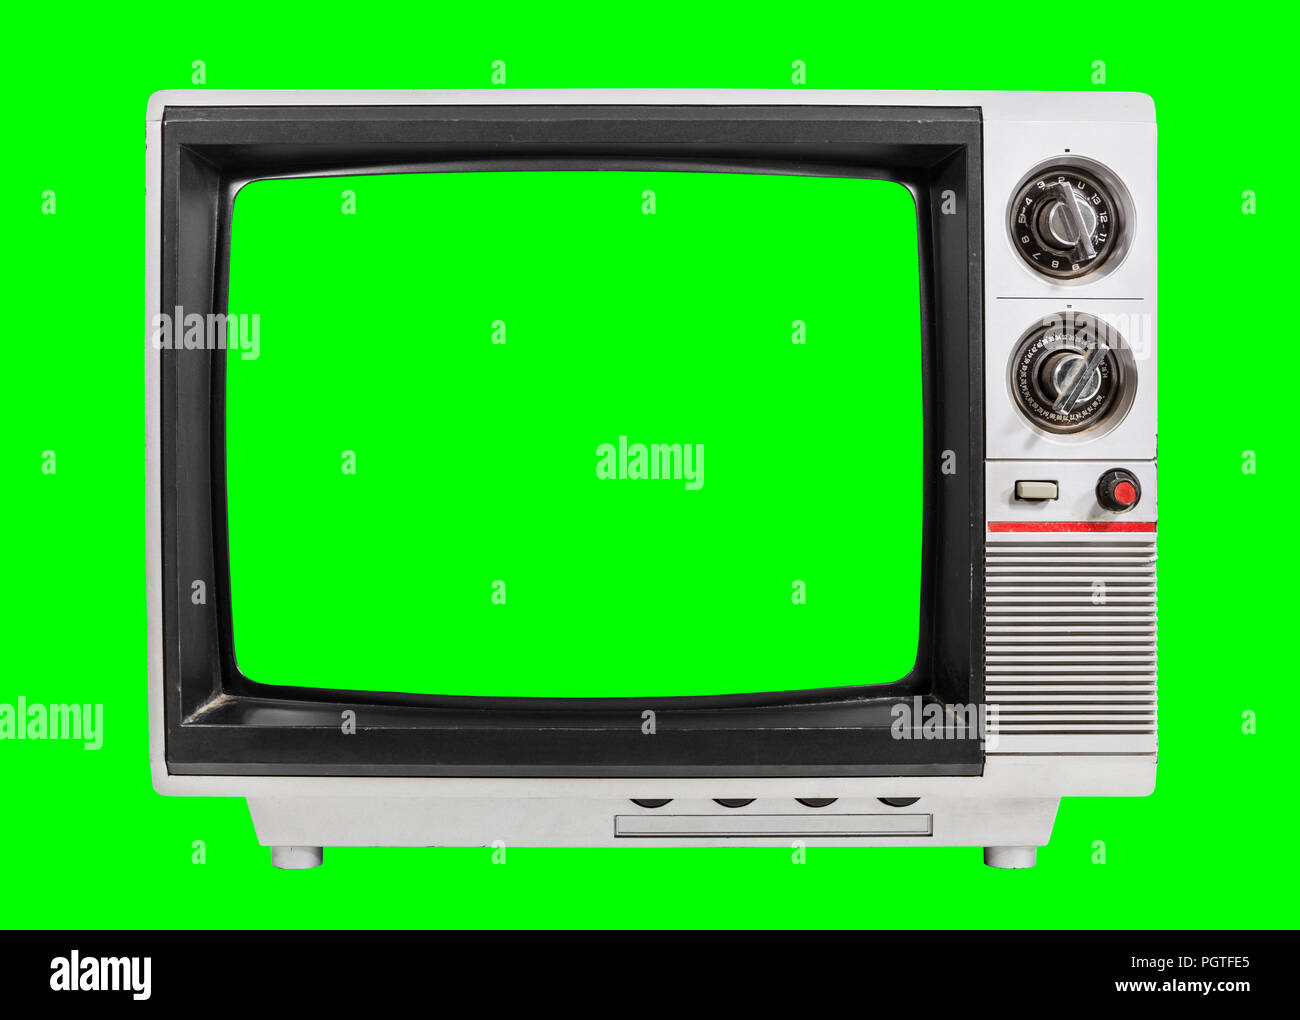 Chiếc TV cũ với những đường nét và màu sắc tuyệt đẹp sẽ đưa bạn trở lại quá khứ. Hãy nhấn vào ảnh để chiêm ngưỡng vẻ đẹp cổ điển của chiếc TV này và lưu giữ kỉ niệm.